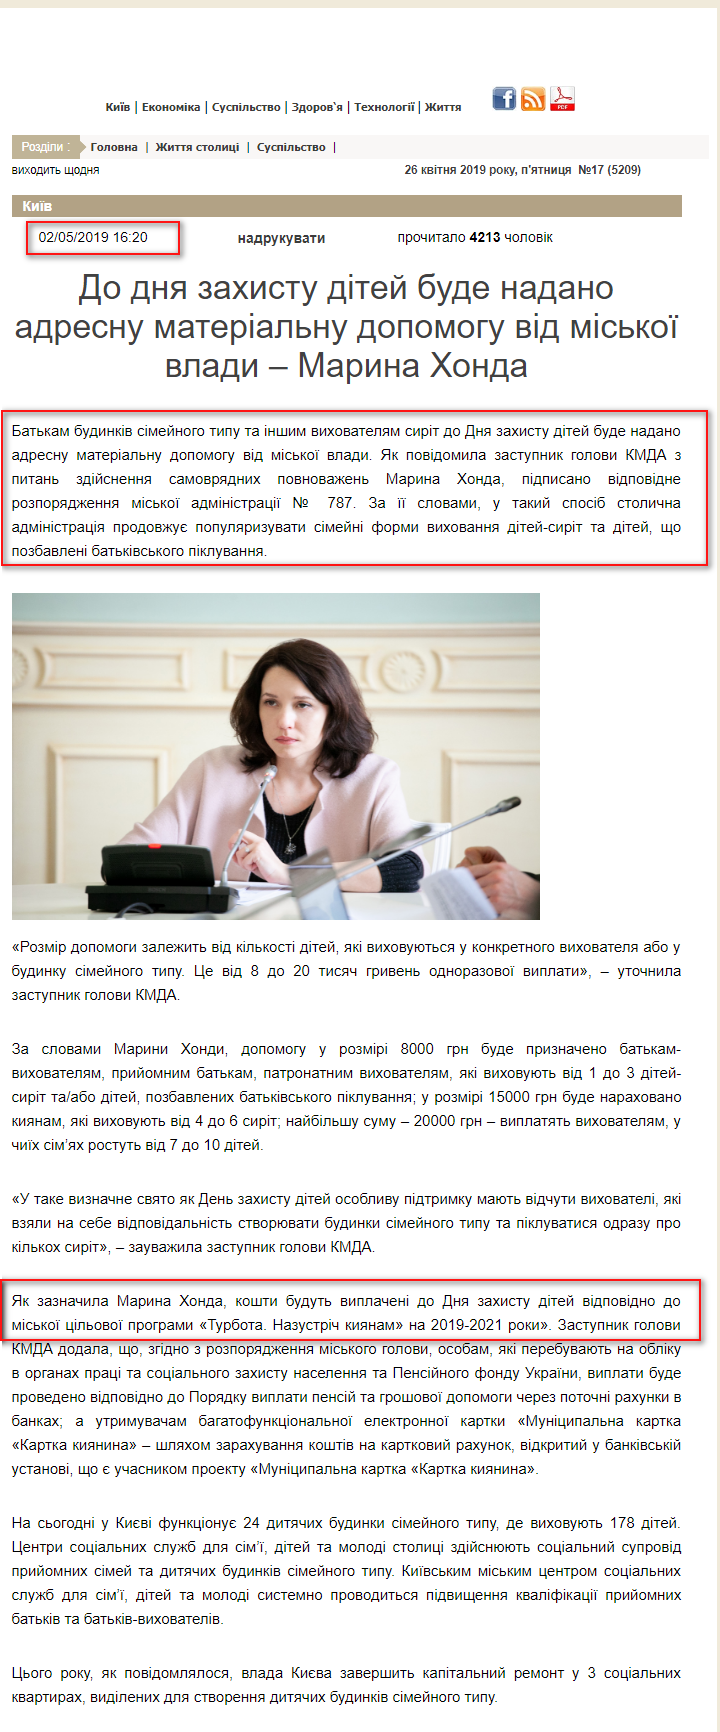 http://kreschatic.kiev.ua/ua/5209/news/1556803229.html